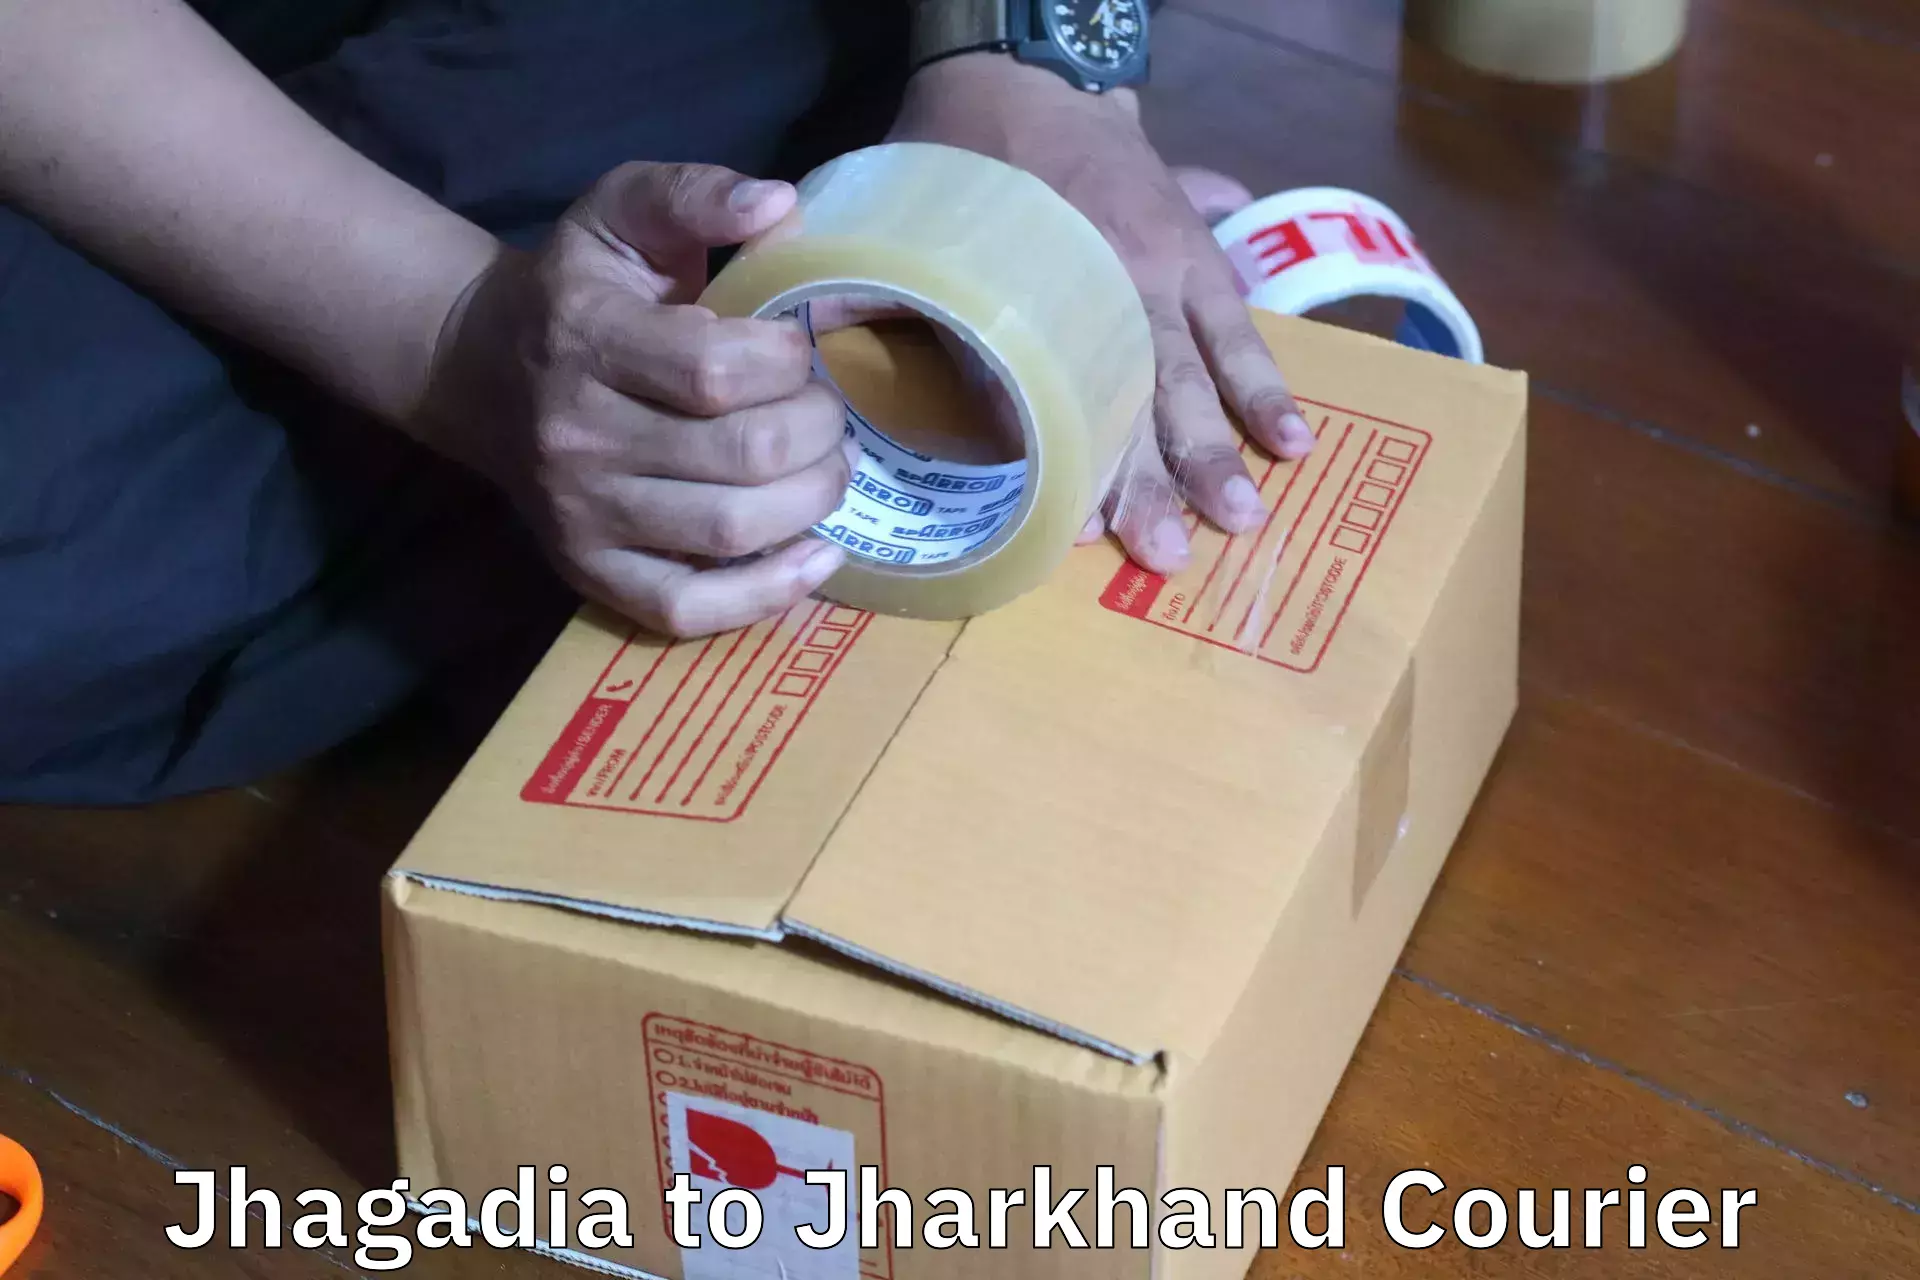 Efficient moving company Jhagadia to Giridih